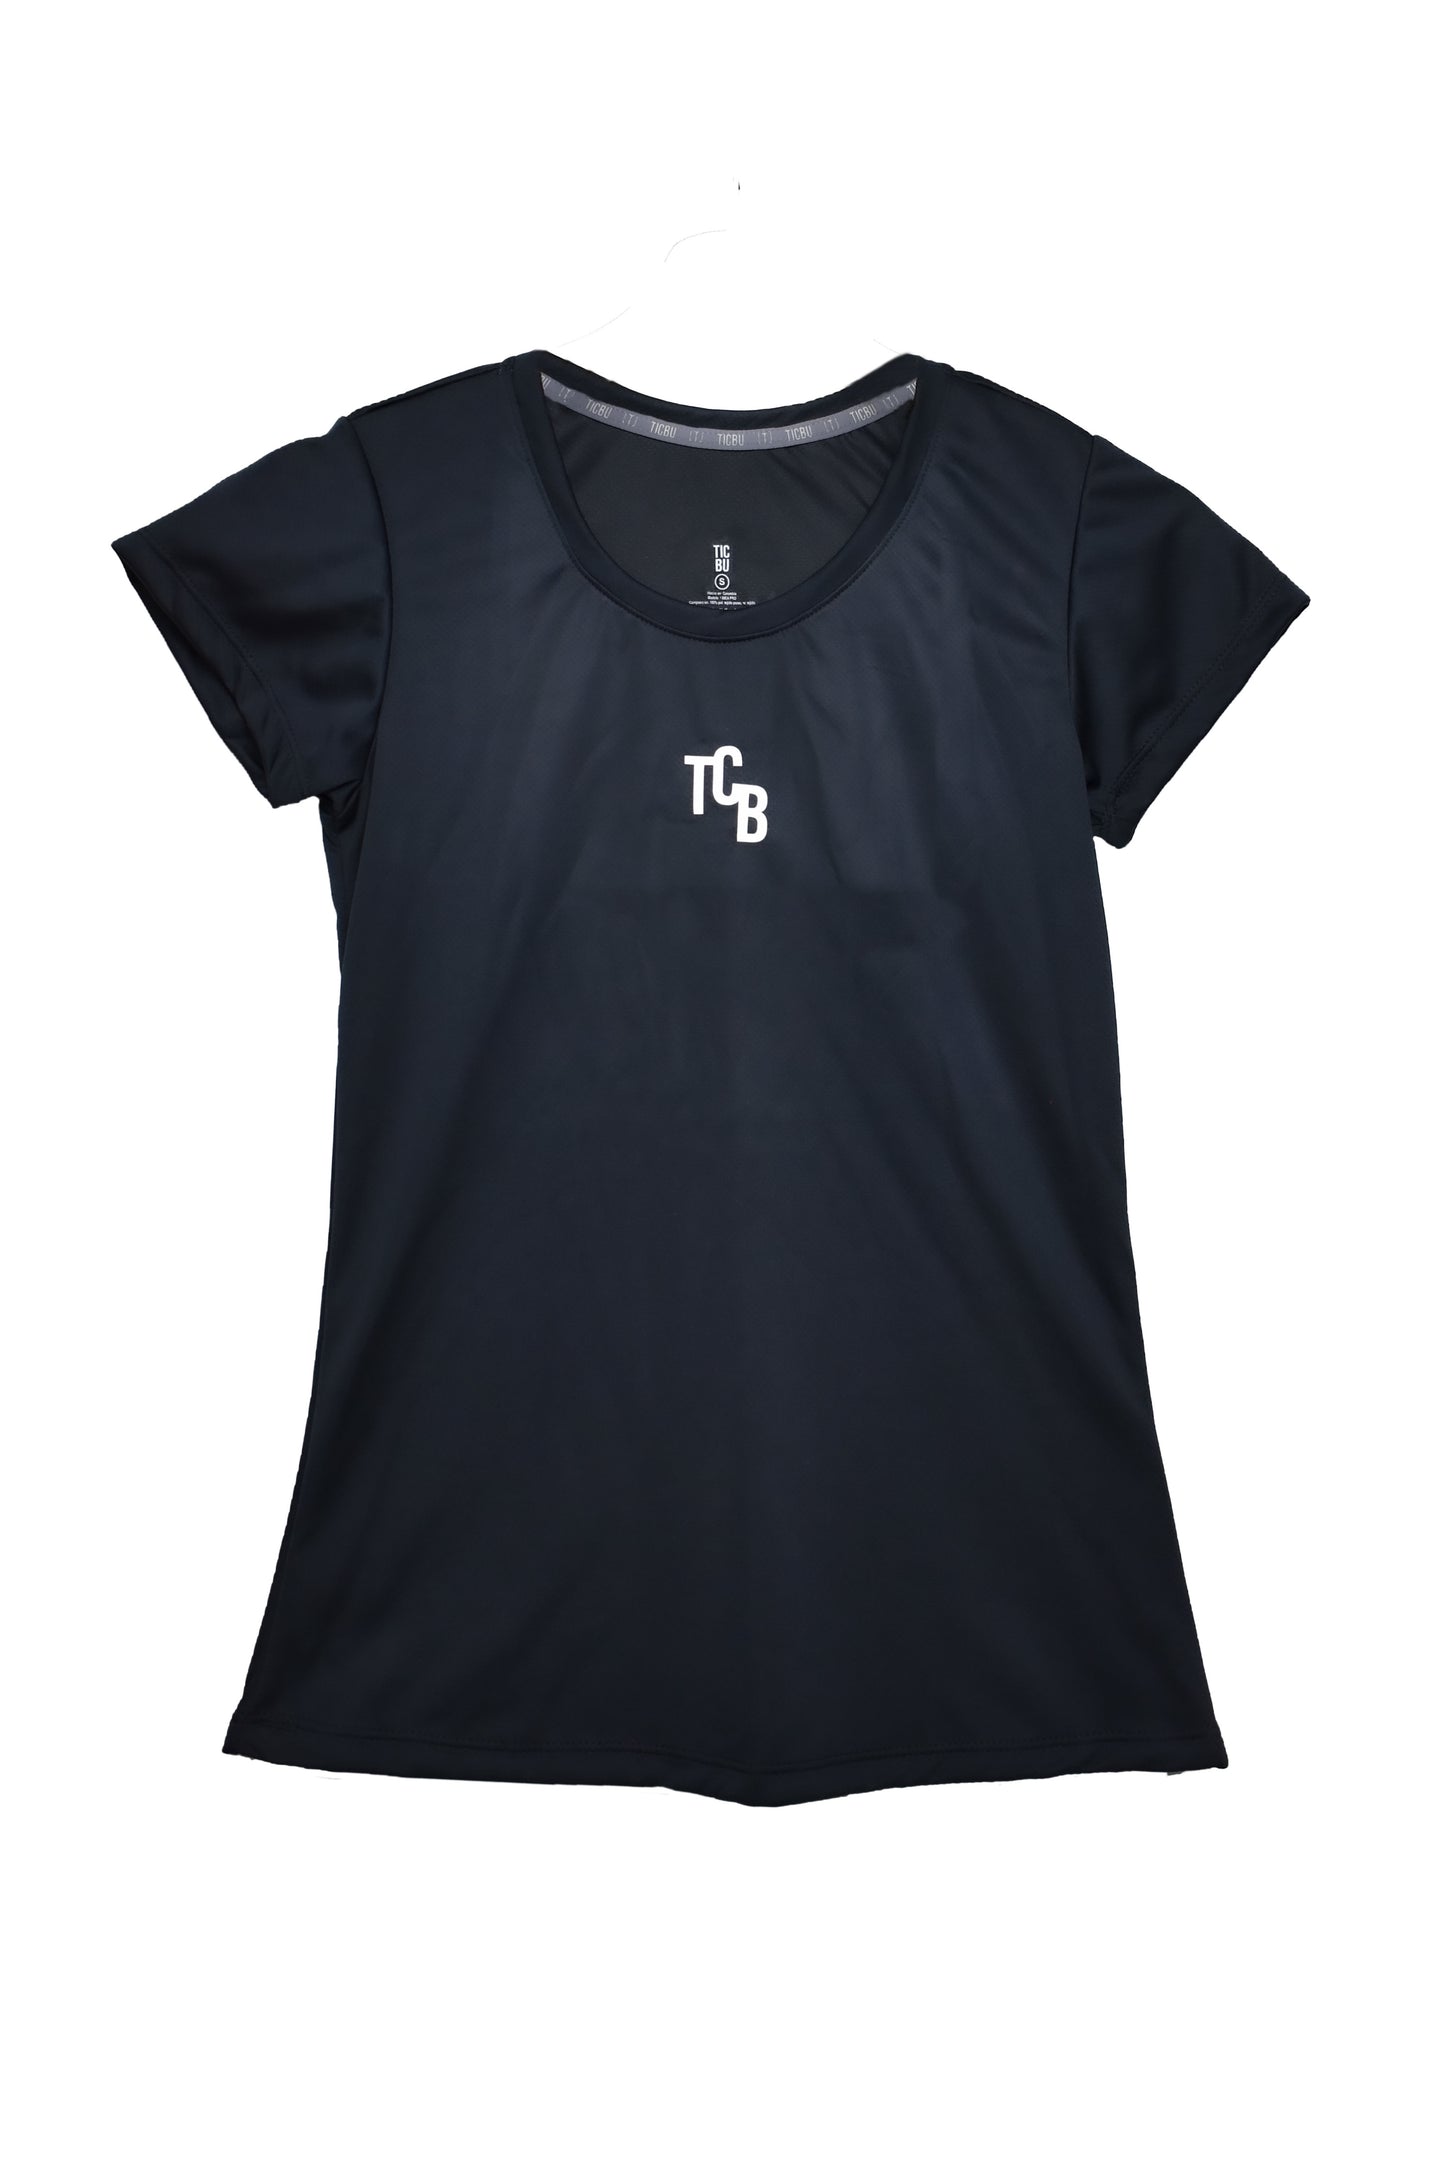 Camiseta Dama Deportiva (Ref Negra)